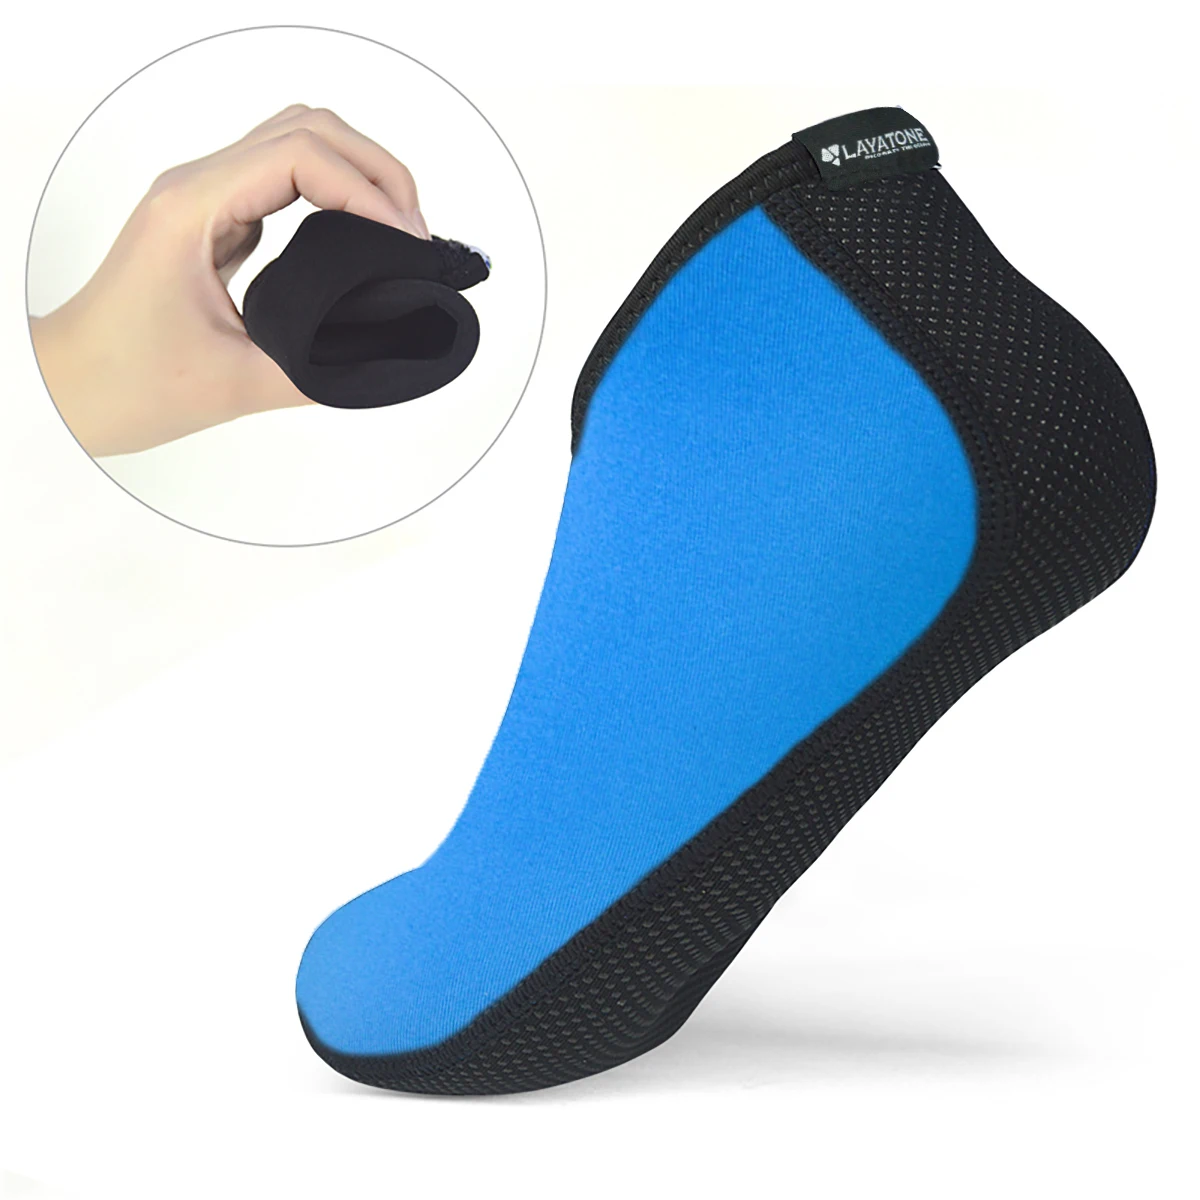 LayaTone/носки для воды для мужчин и женщин, Пляжные Носки, 2,5 мм, неопреновые носки для дайвинга, каякинга, подводного плавания, йоги, пляжная обувь